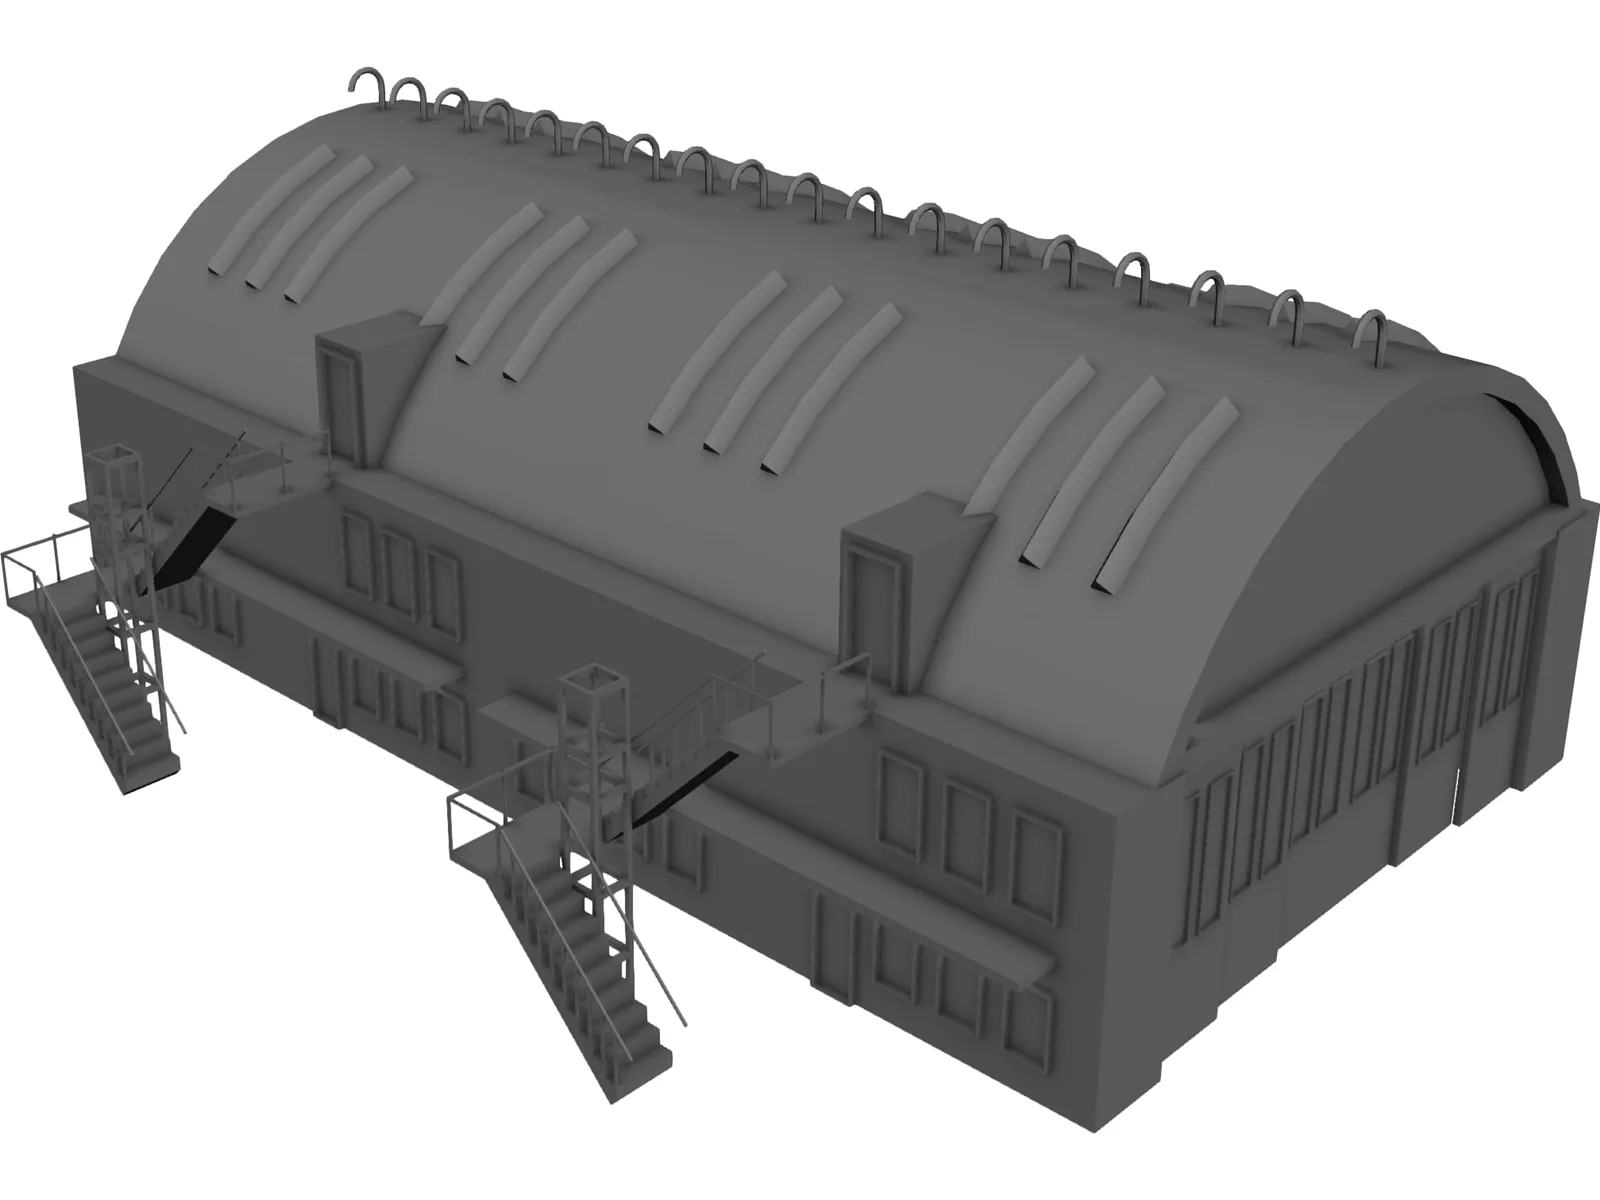 Aircraft Shelter 3D Model